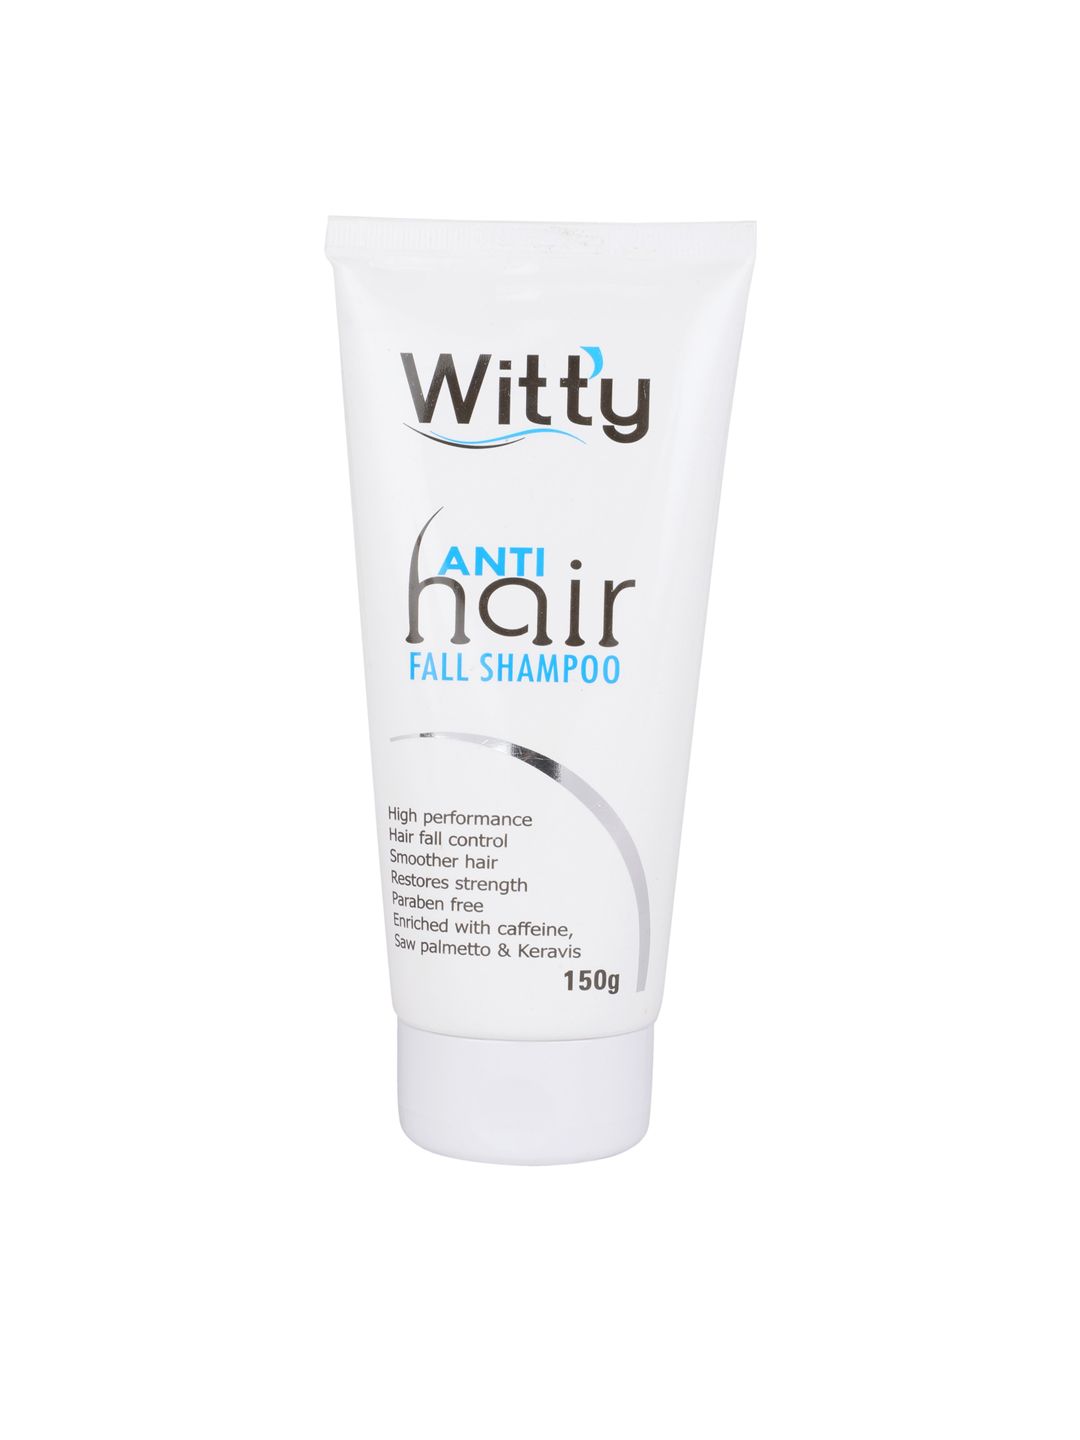 Navitus Witty Anti Hairfall Shampoo 150 g Price in India